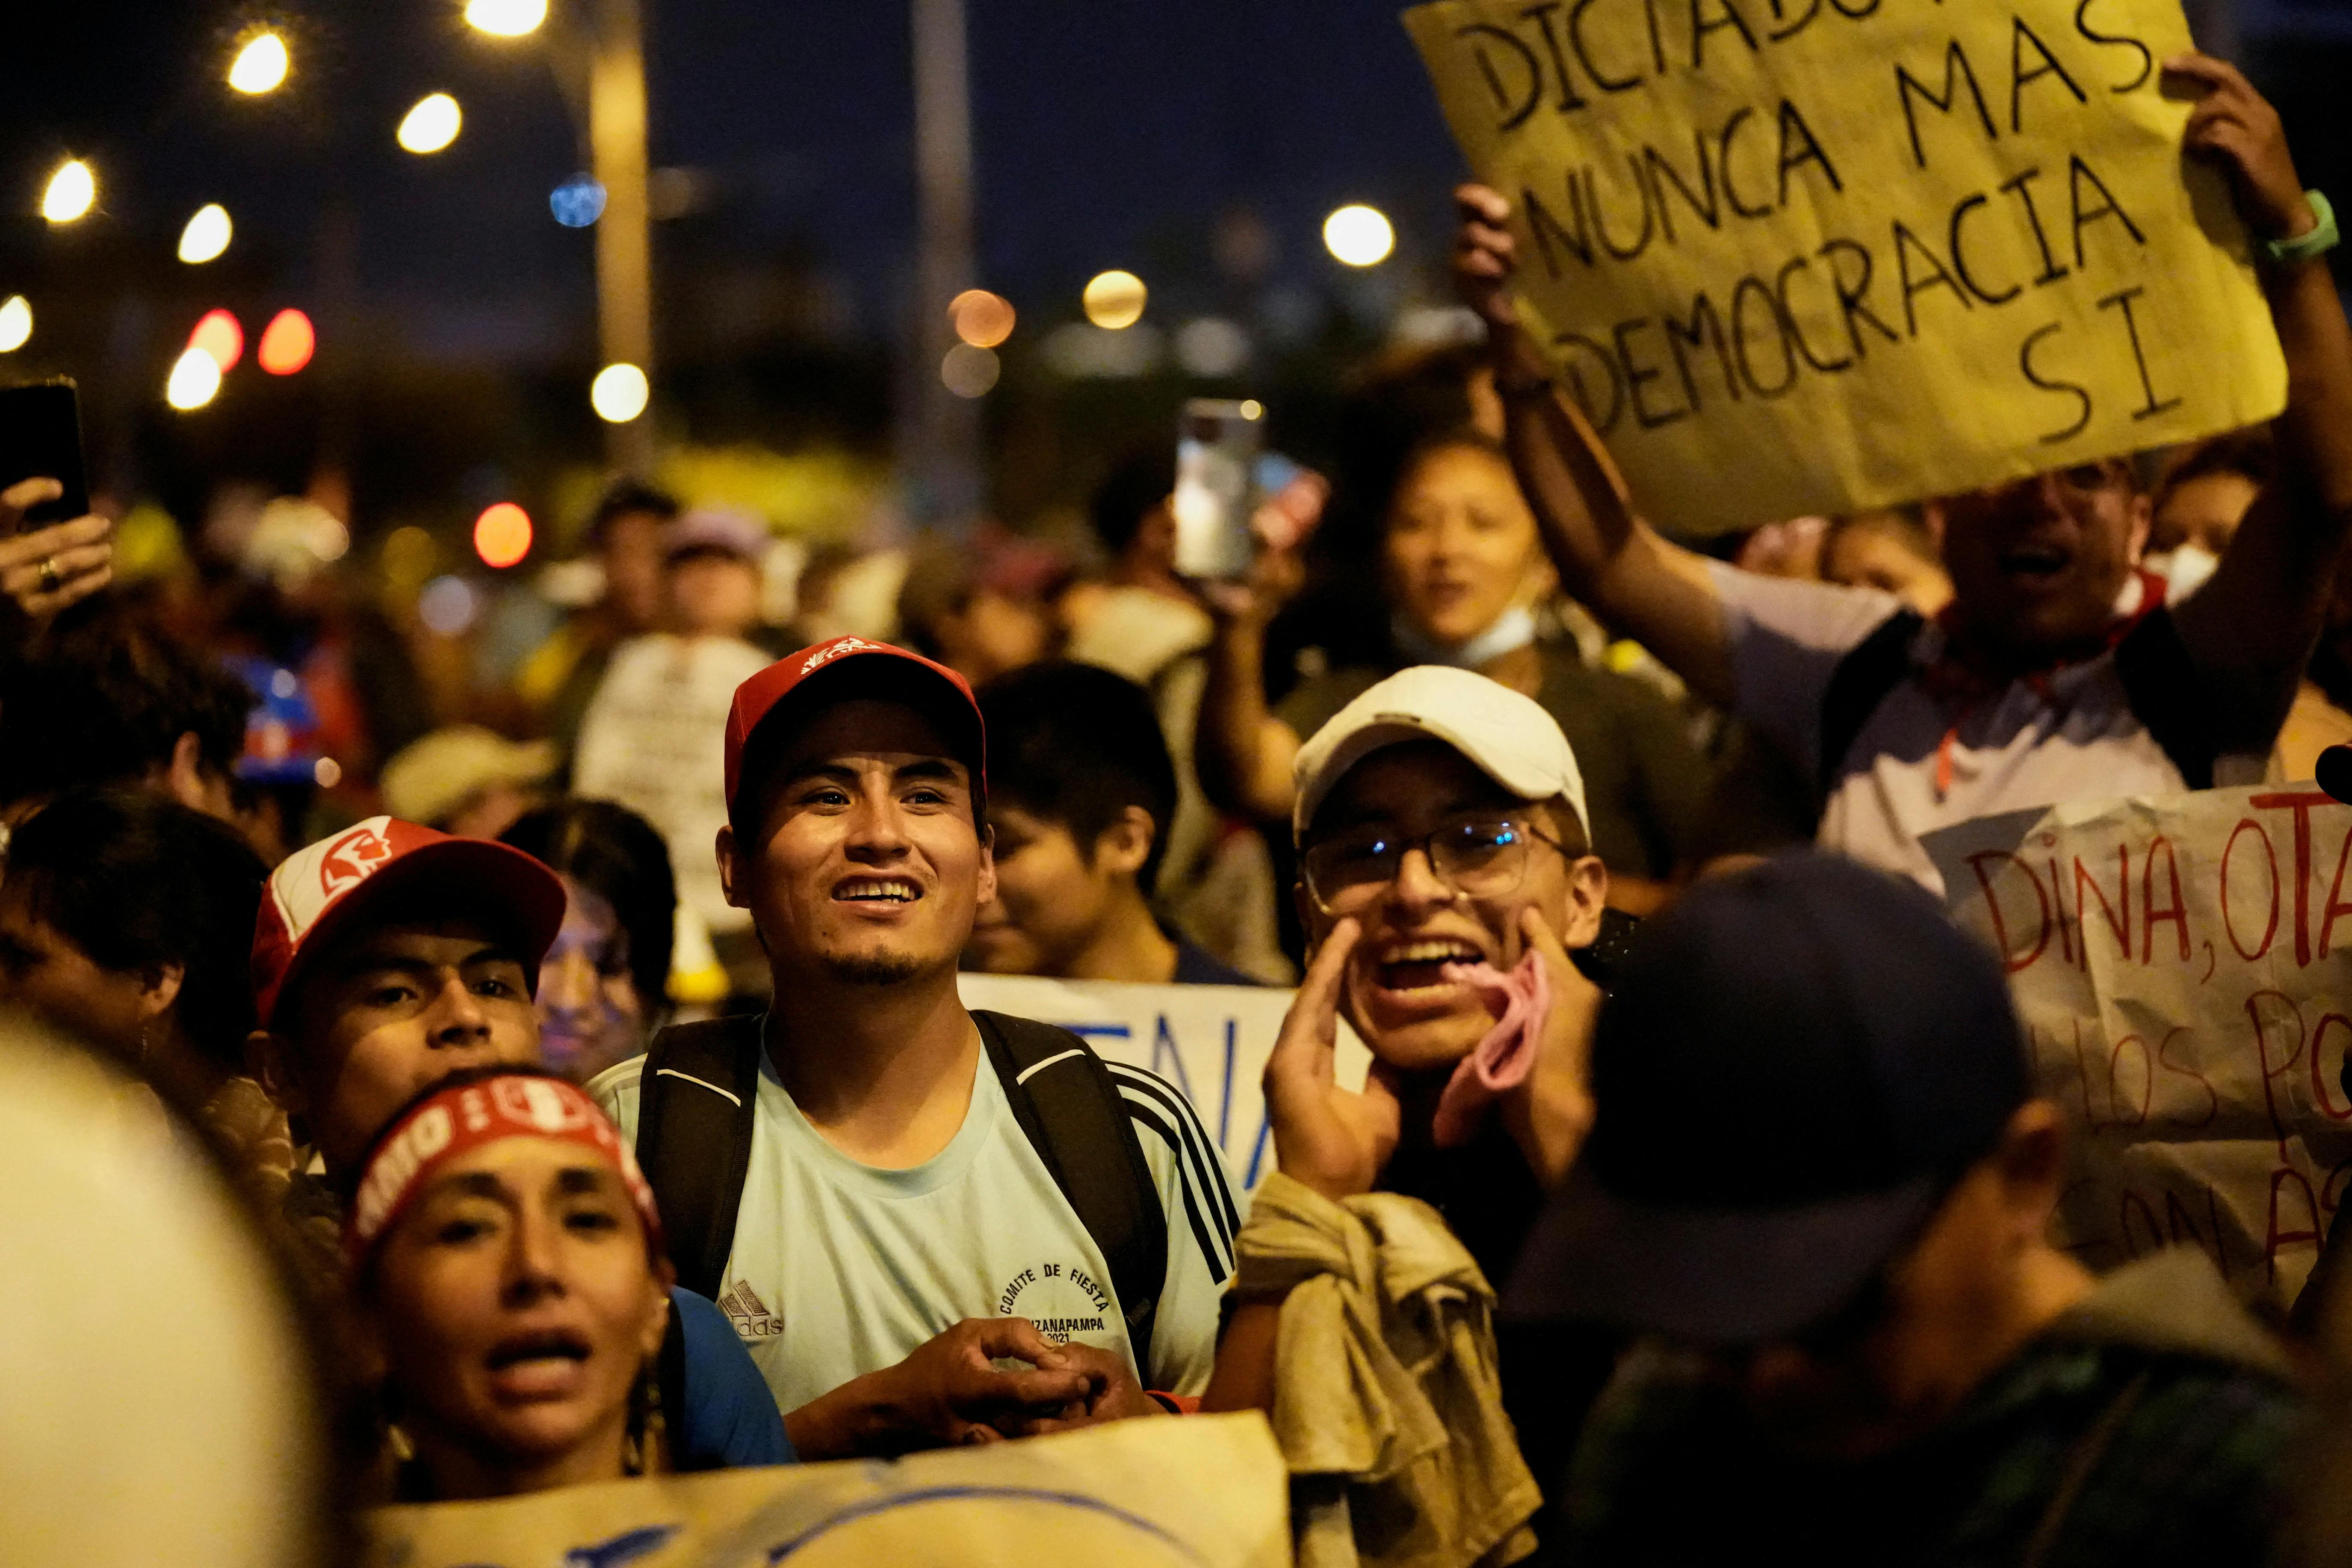 Tusindvis af demonstranter i det sydamerikanske land har i den seneste periode fundet vej til gaderne for at protestere mod præsidenten Dina Boluarte.